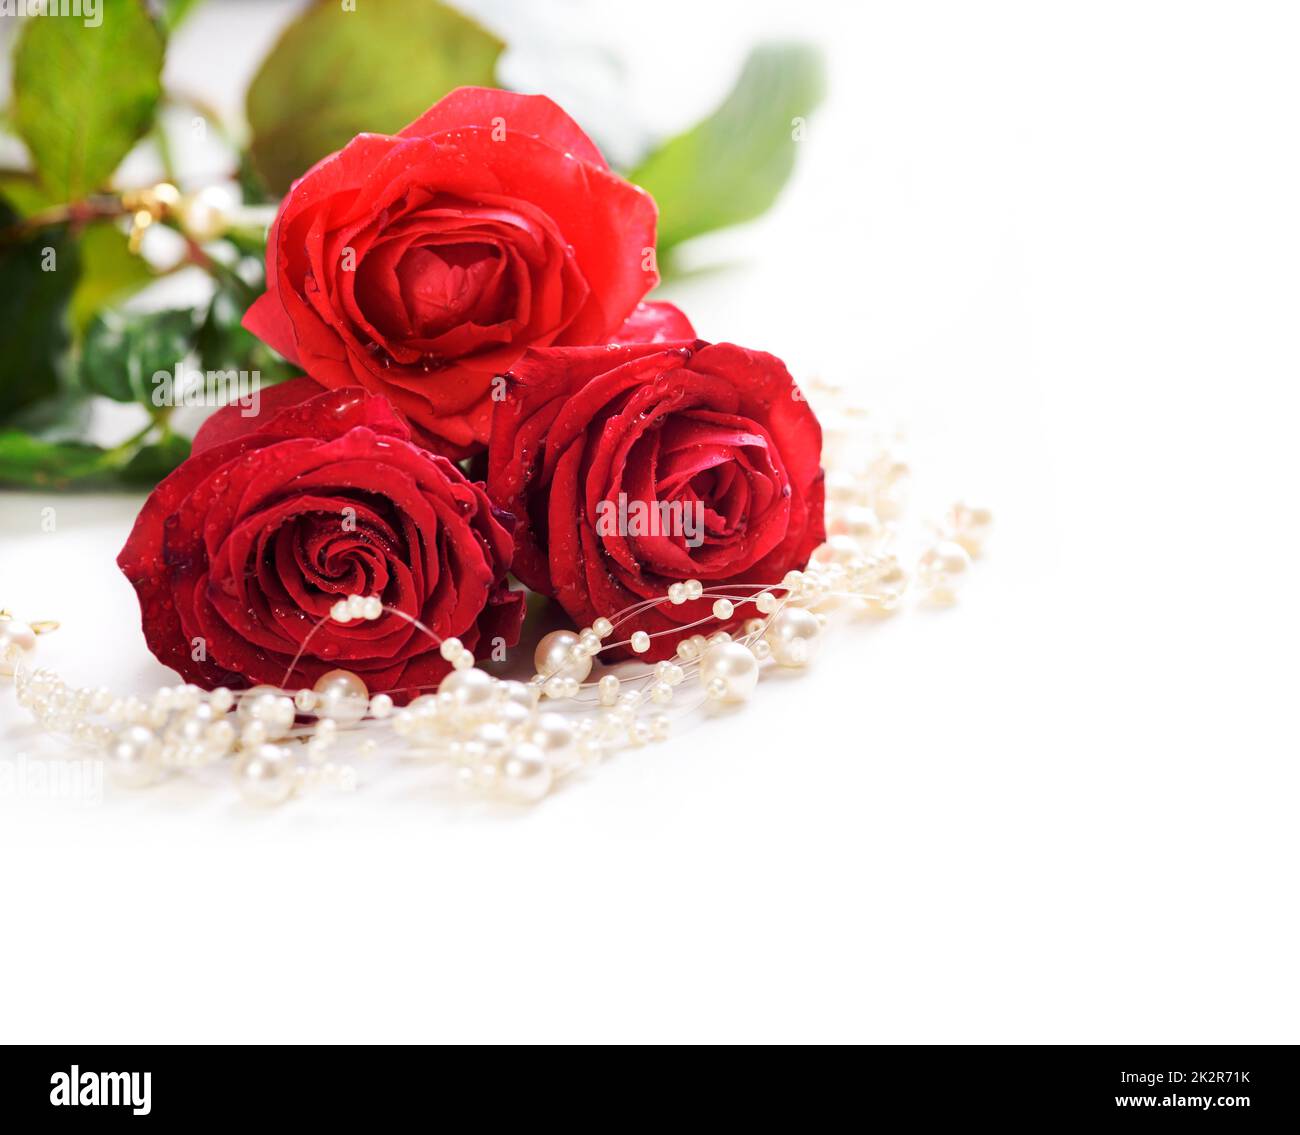 Rose e perle immagini e fotografie stock ad alta risoluzione - Alamy